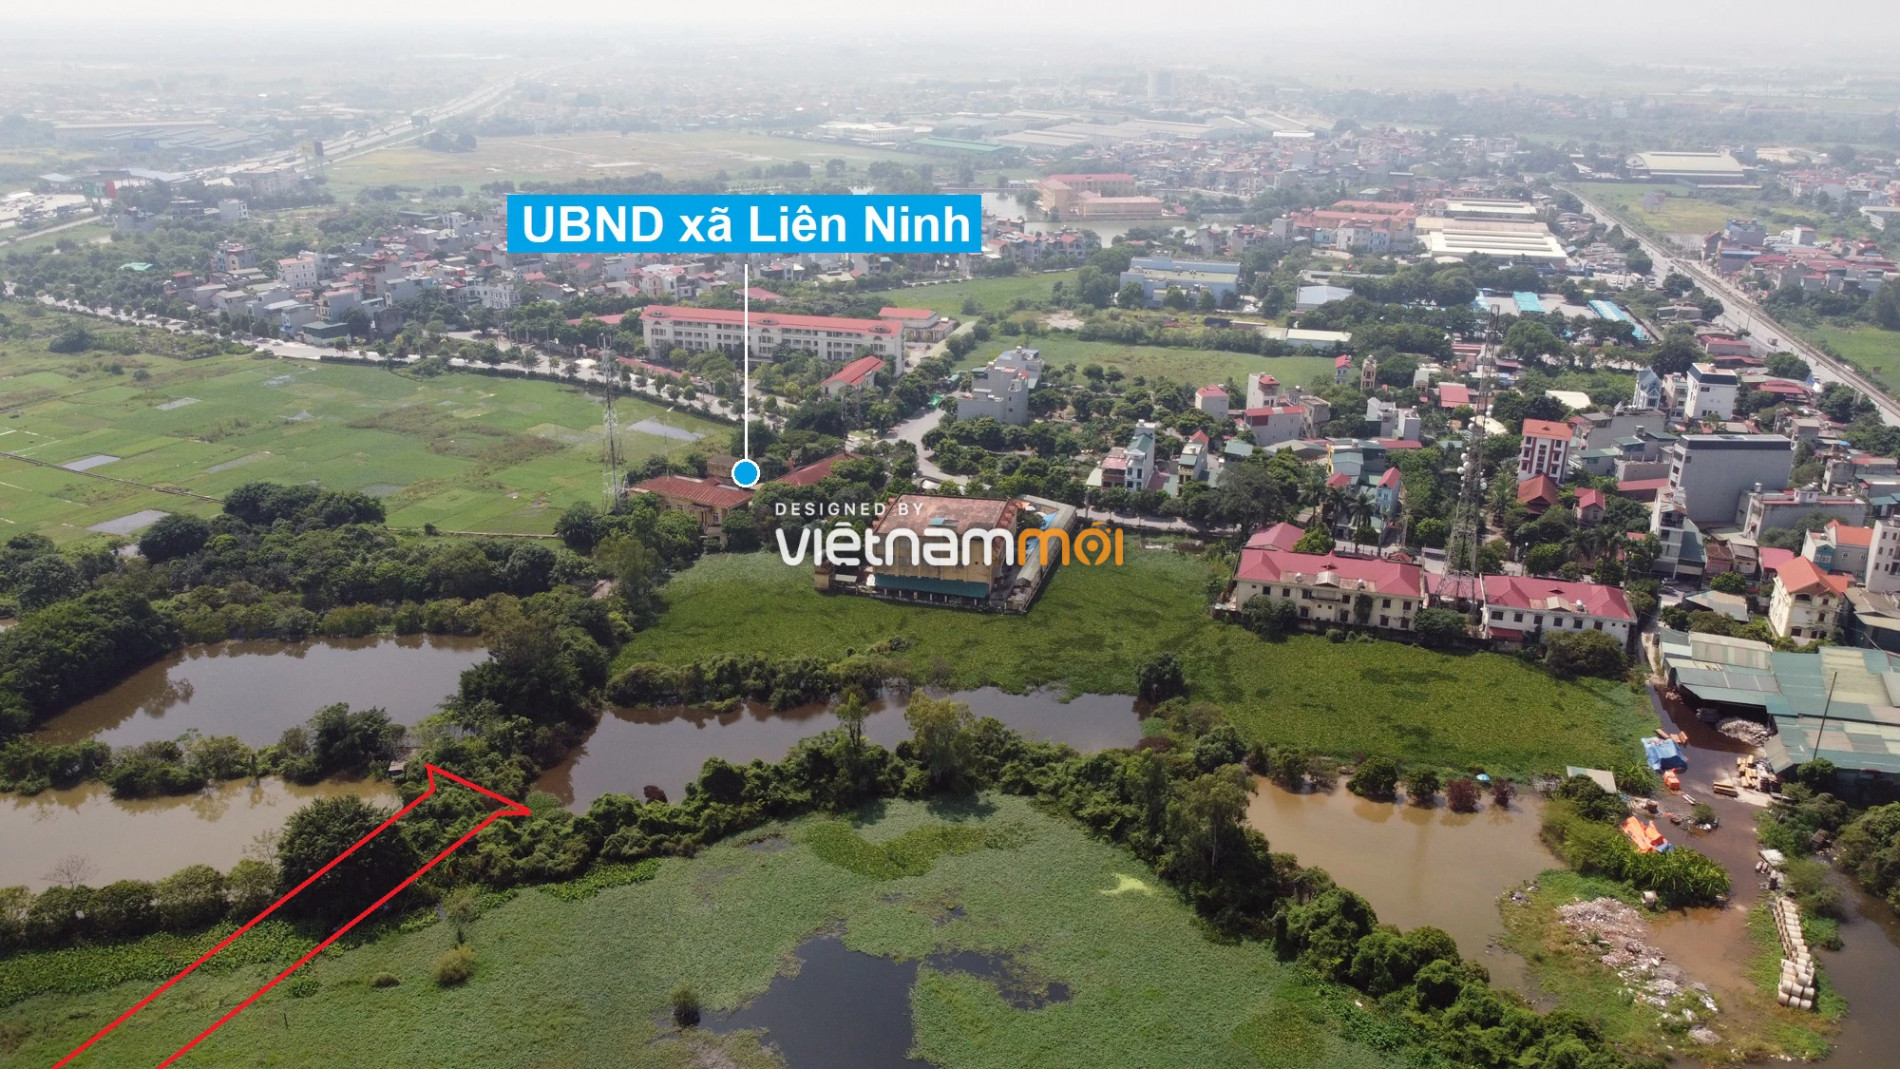  Những khu đất sắp thu hồi để mở đường ở xã Liên Ninh, Thanh Trì, Hà Nội (phần 6) - Ảnh 3.